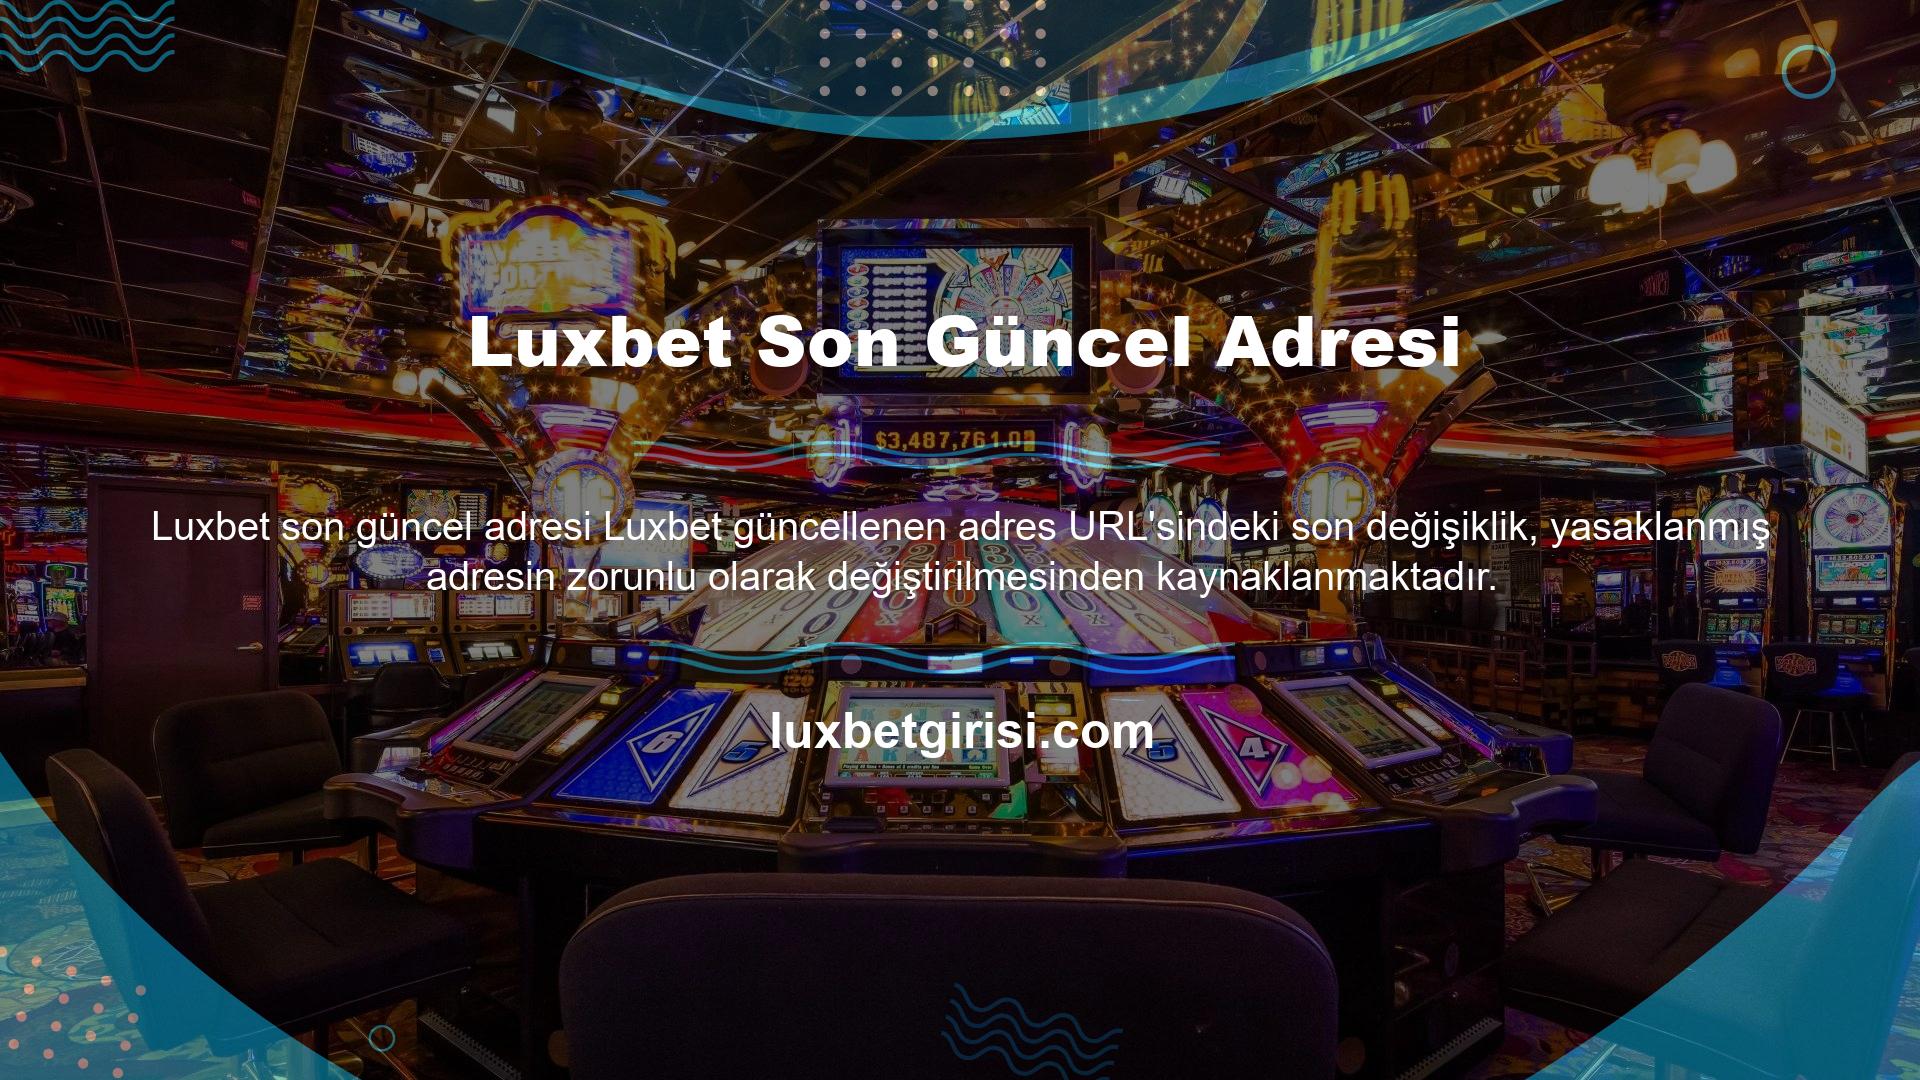 Luxbet Son Güncel Adresi